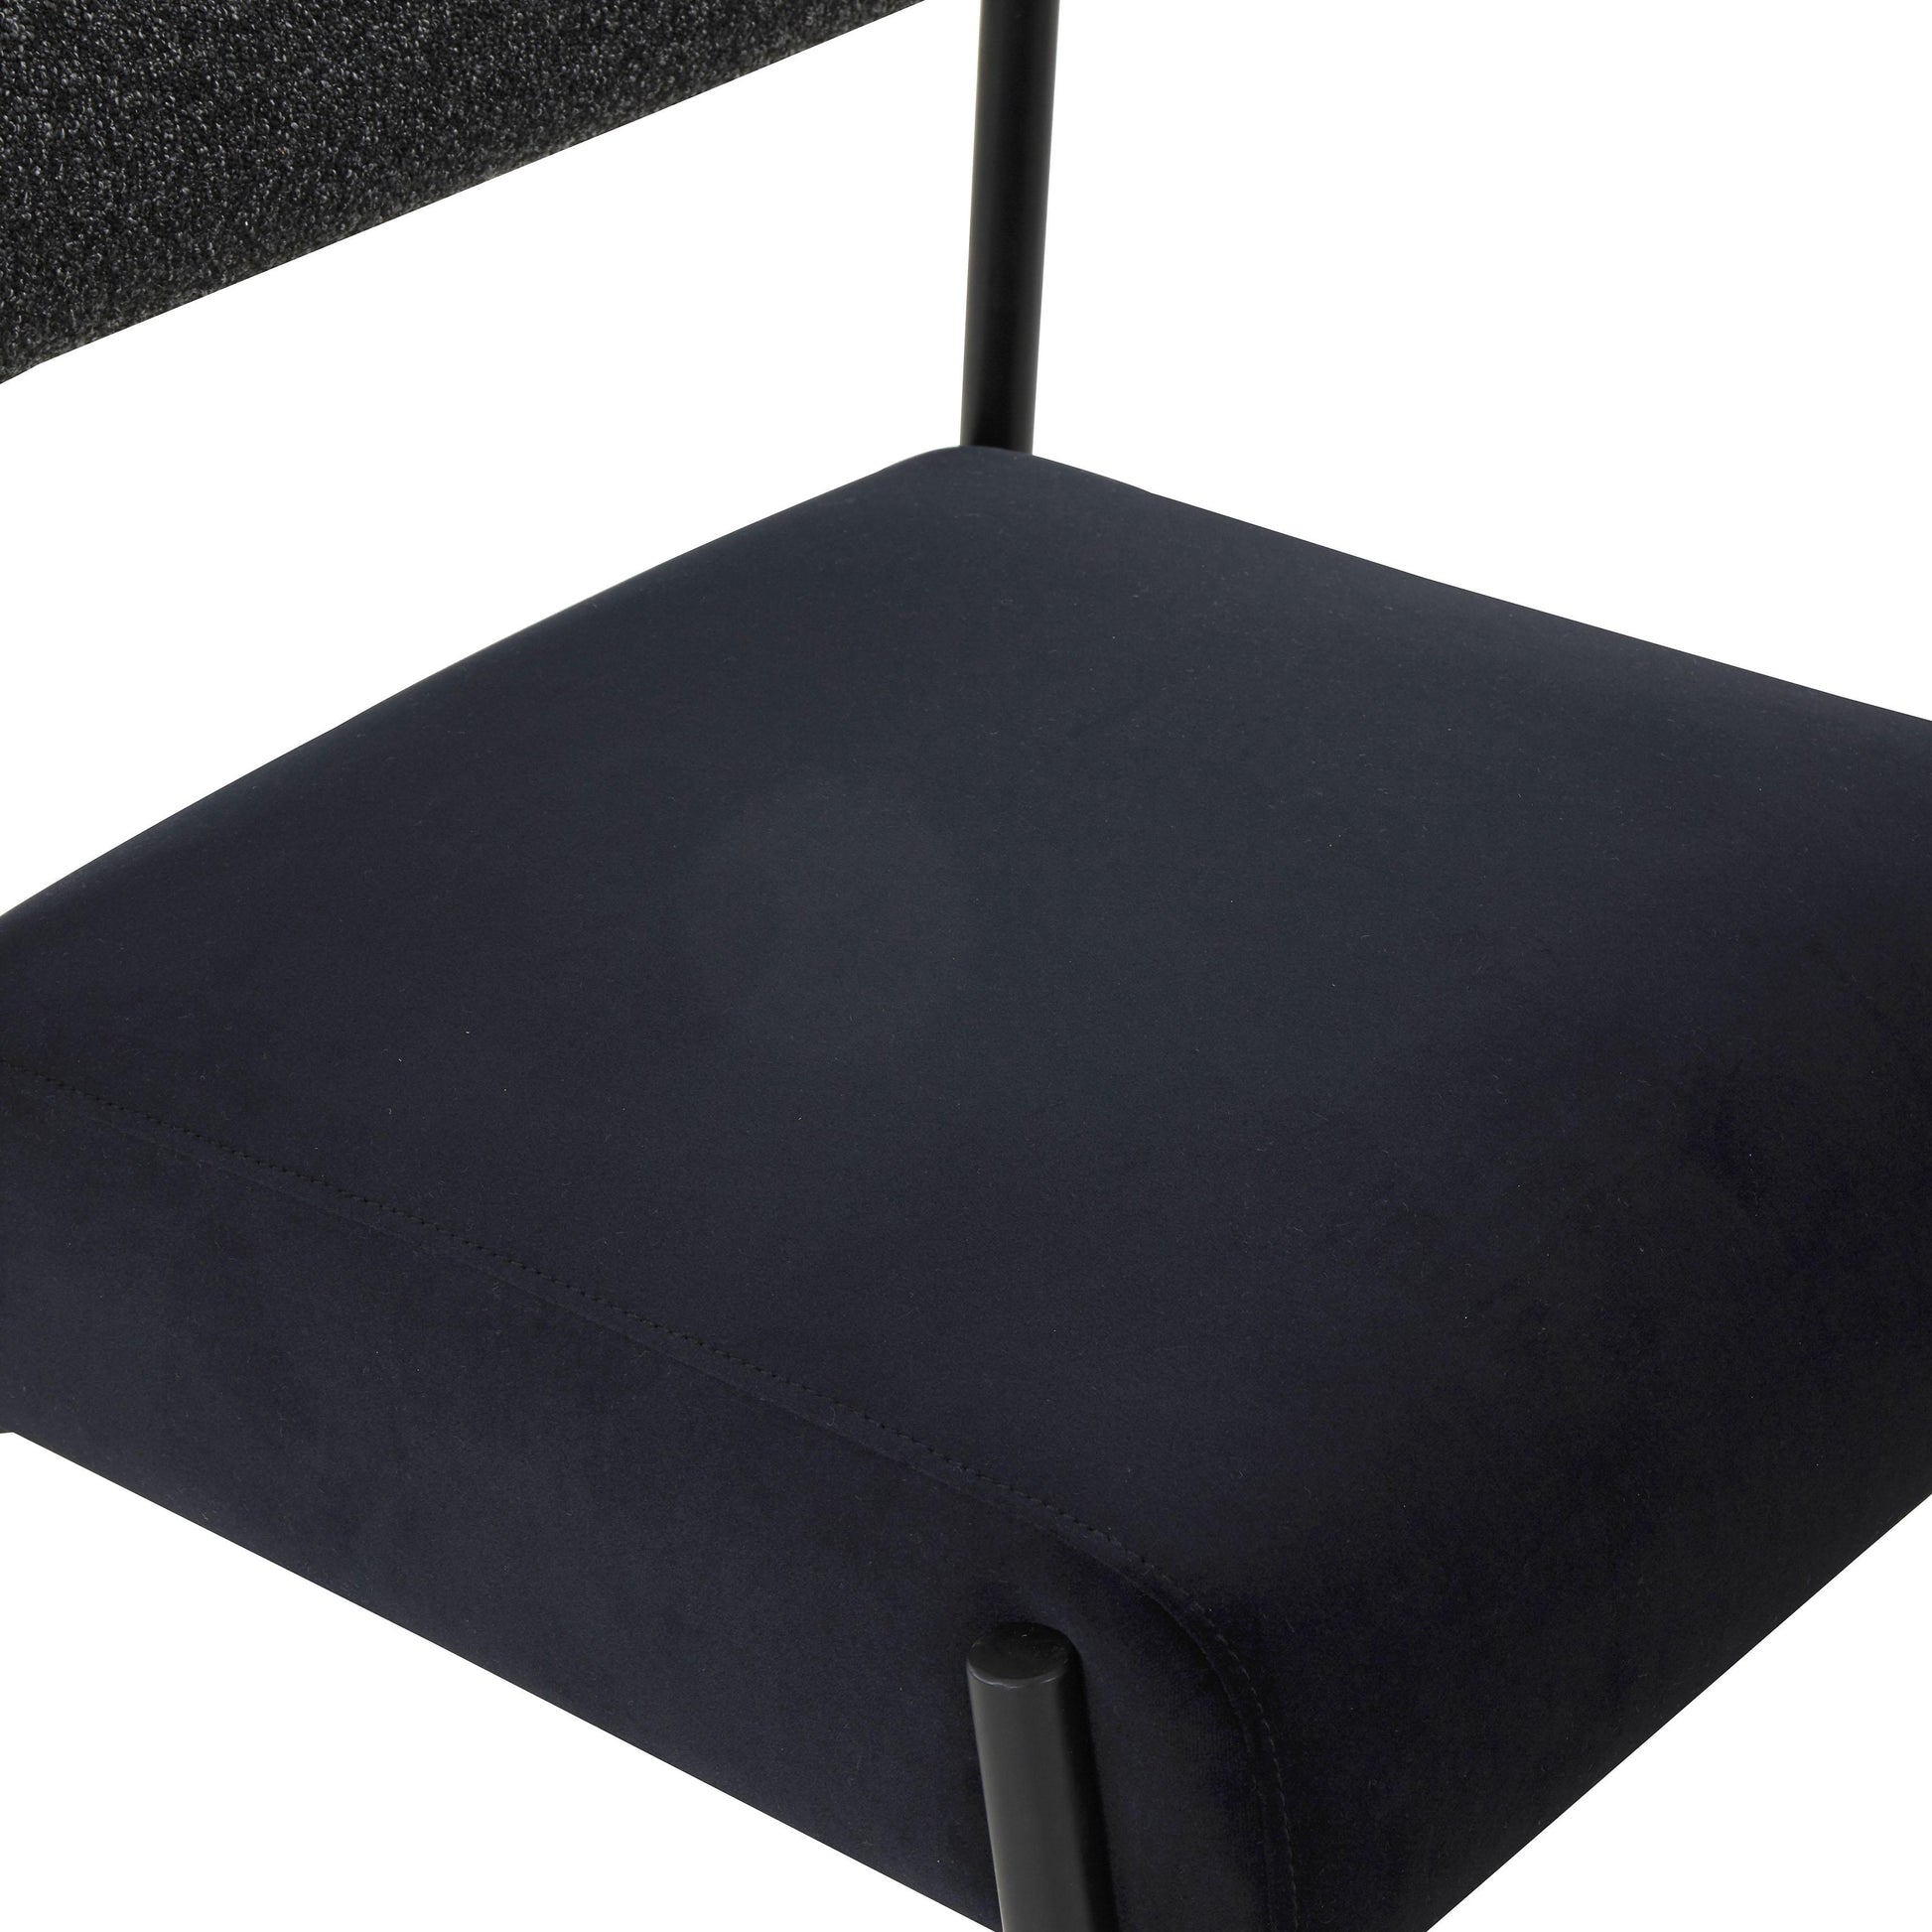 Jolene Velvet Dining Chair - Set of 2 – TOV Furniture